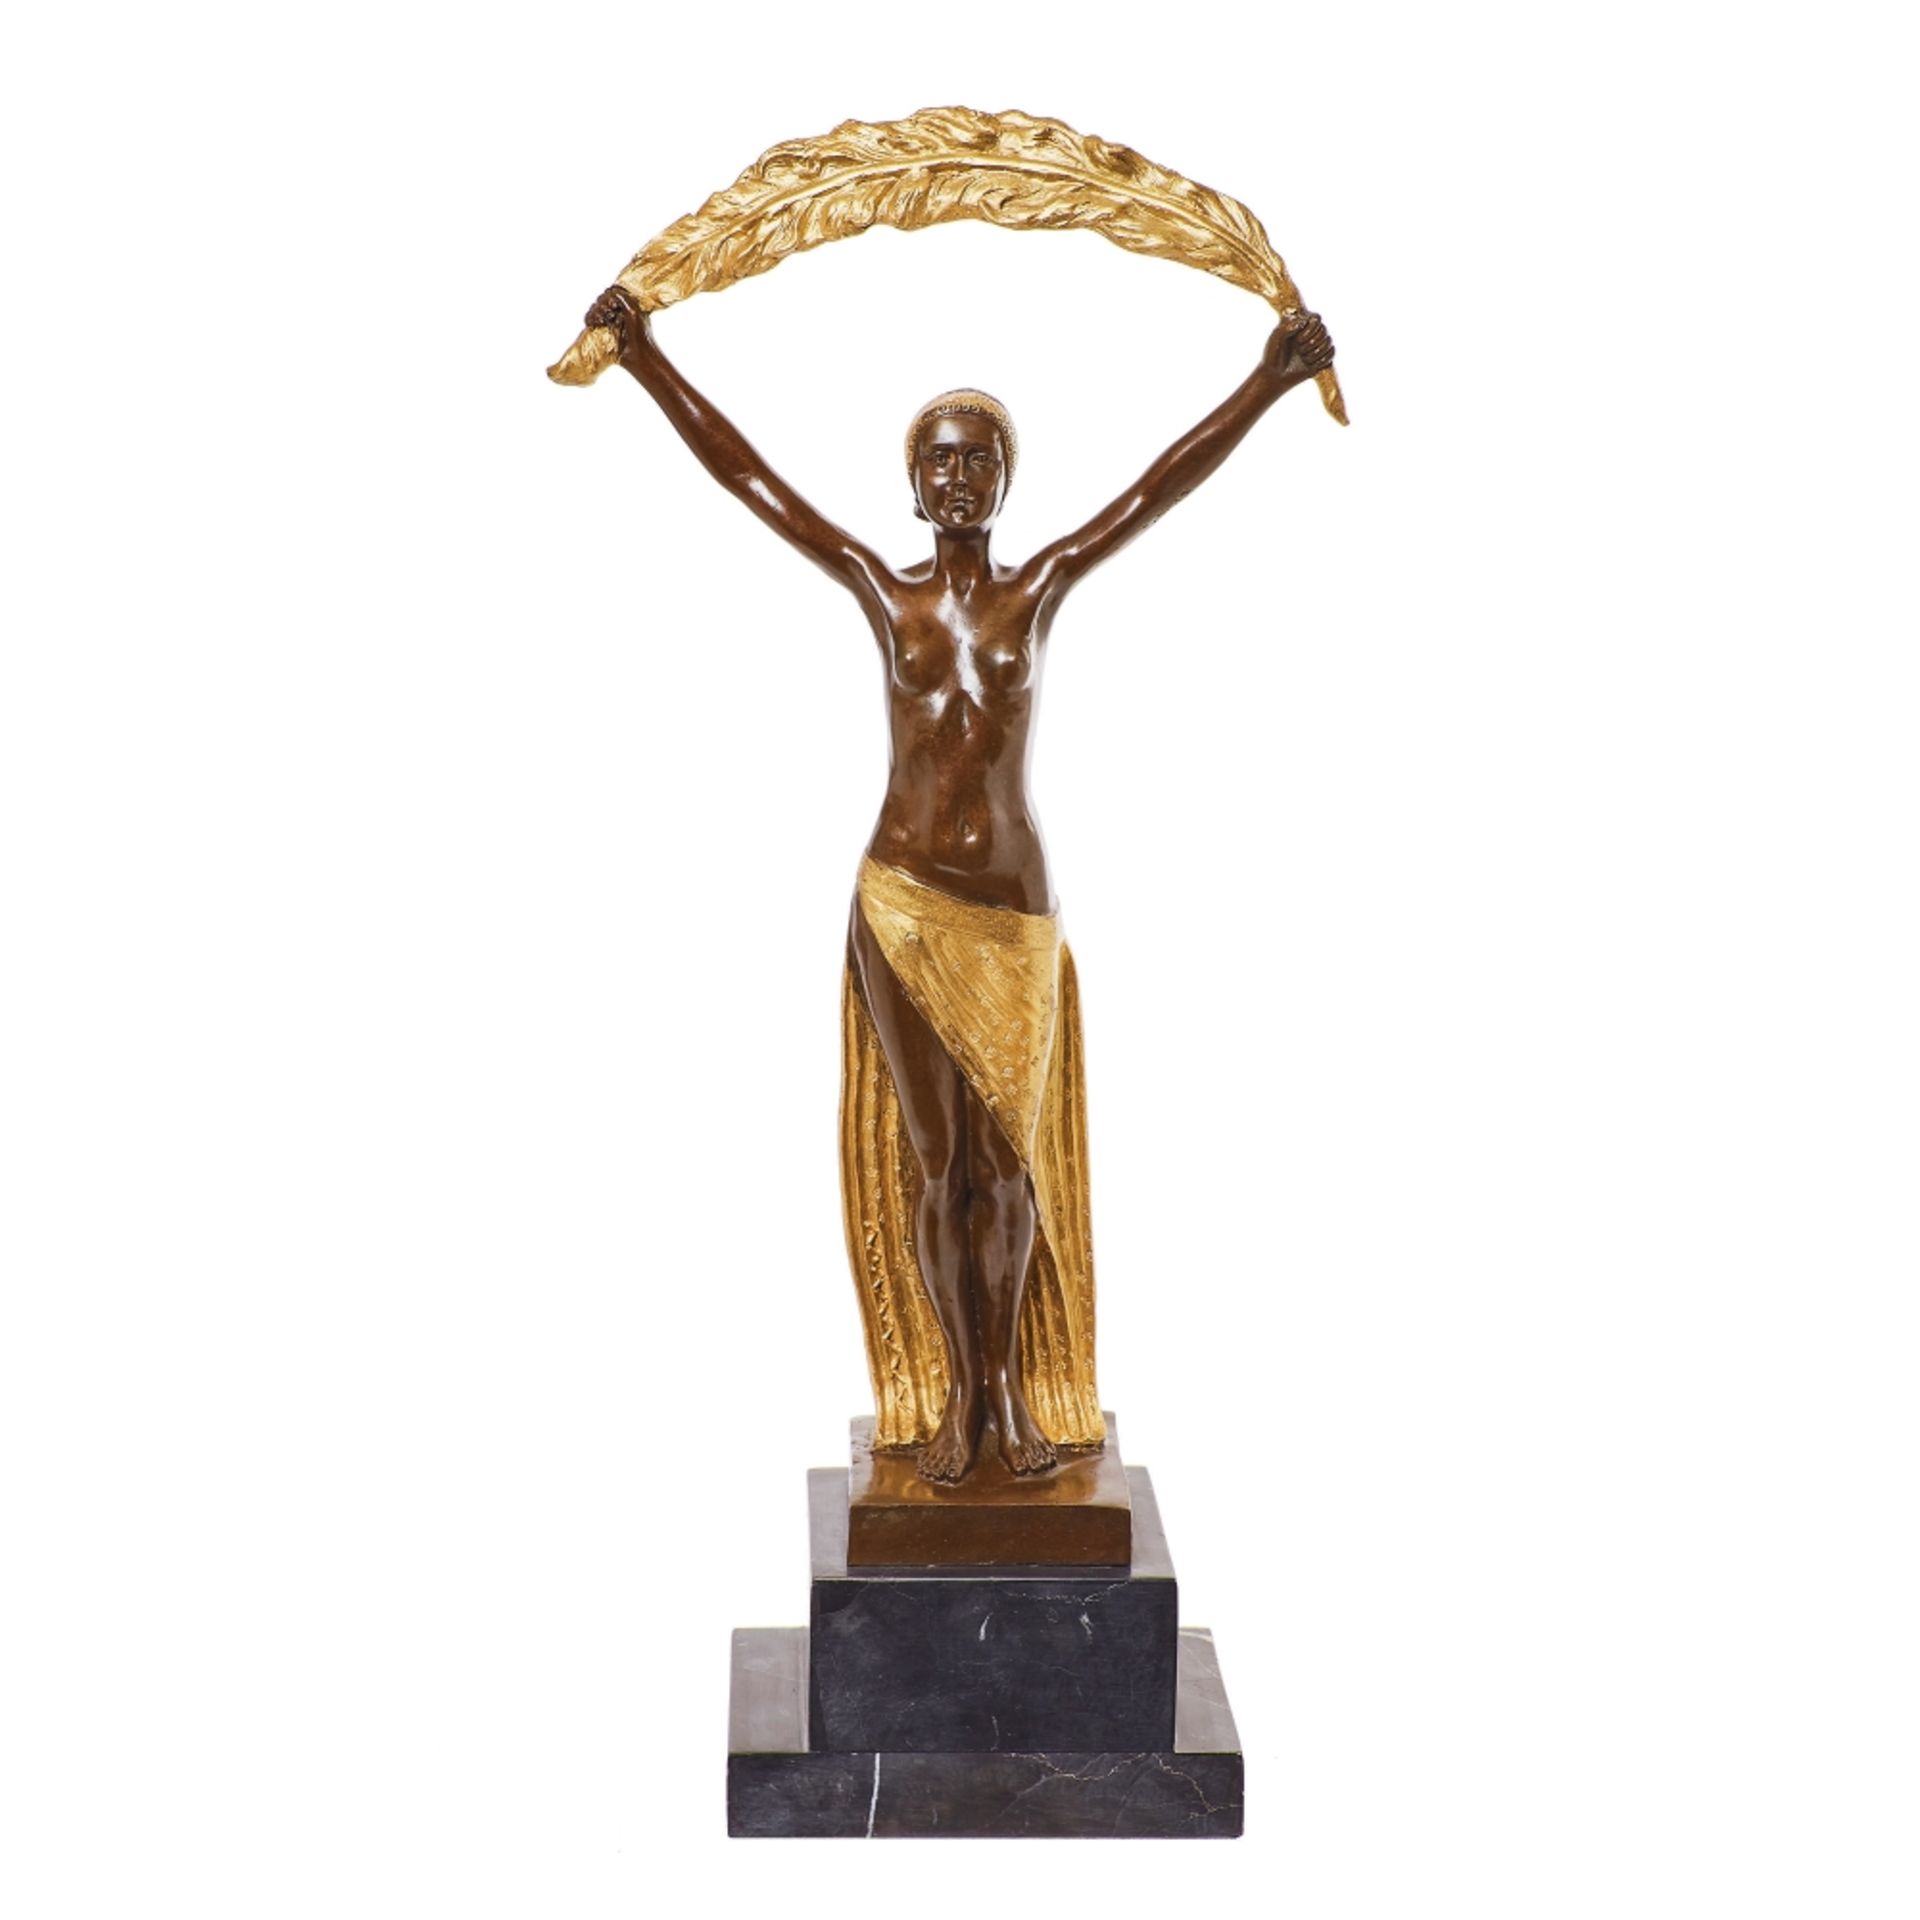 Escuela europea, fles. del s.XX. Mujer con palma. Escultura en bronce dorado y patinado.